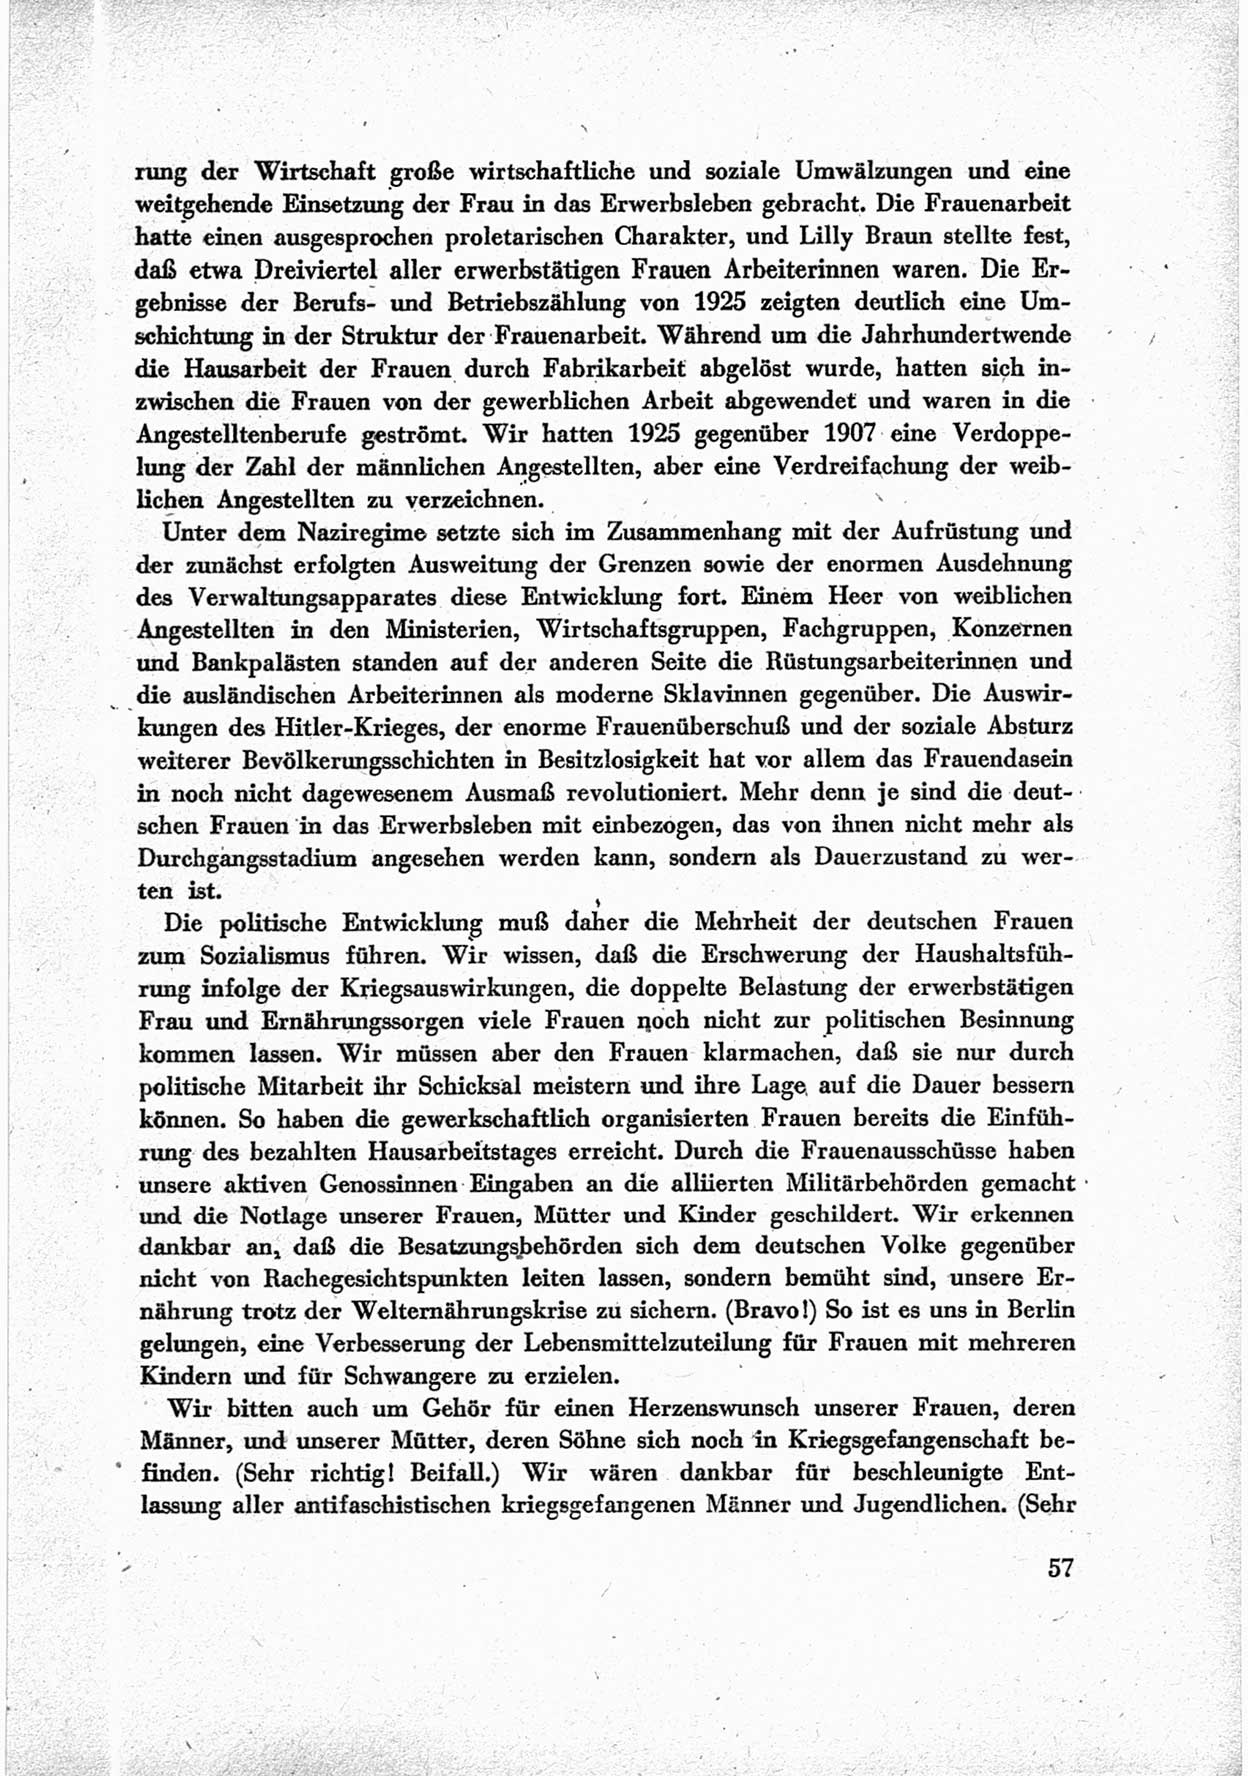 40. Parteitag der Sozialdemokratischen Partei Deutschlands (SPD) [Sowjetische Besatzungszone (SBZ) Deutschlands] am 19. und 20. April 1946 in Berlin, Seite 57 (40. PT SPD SBZ Dtl. 1946, S. 57)